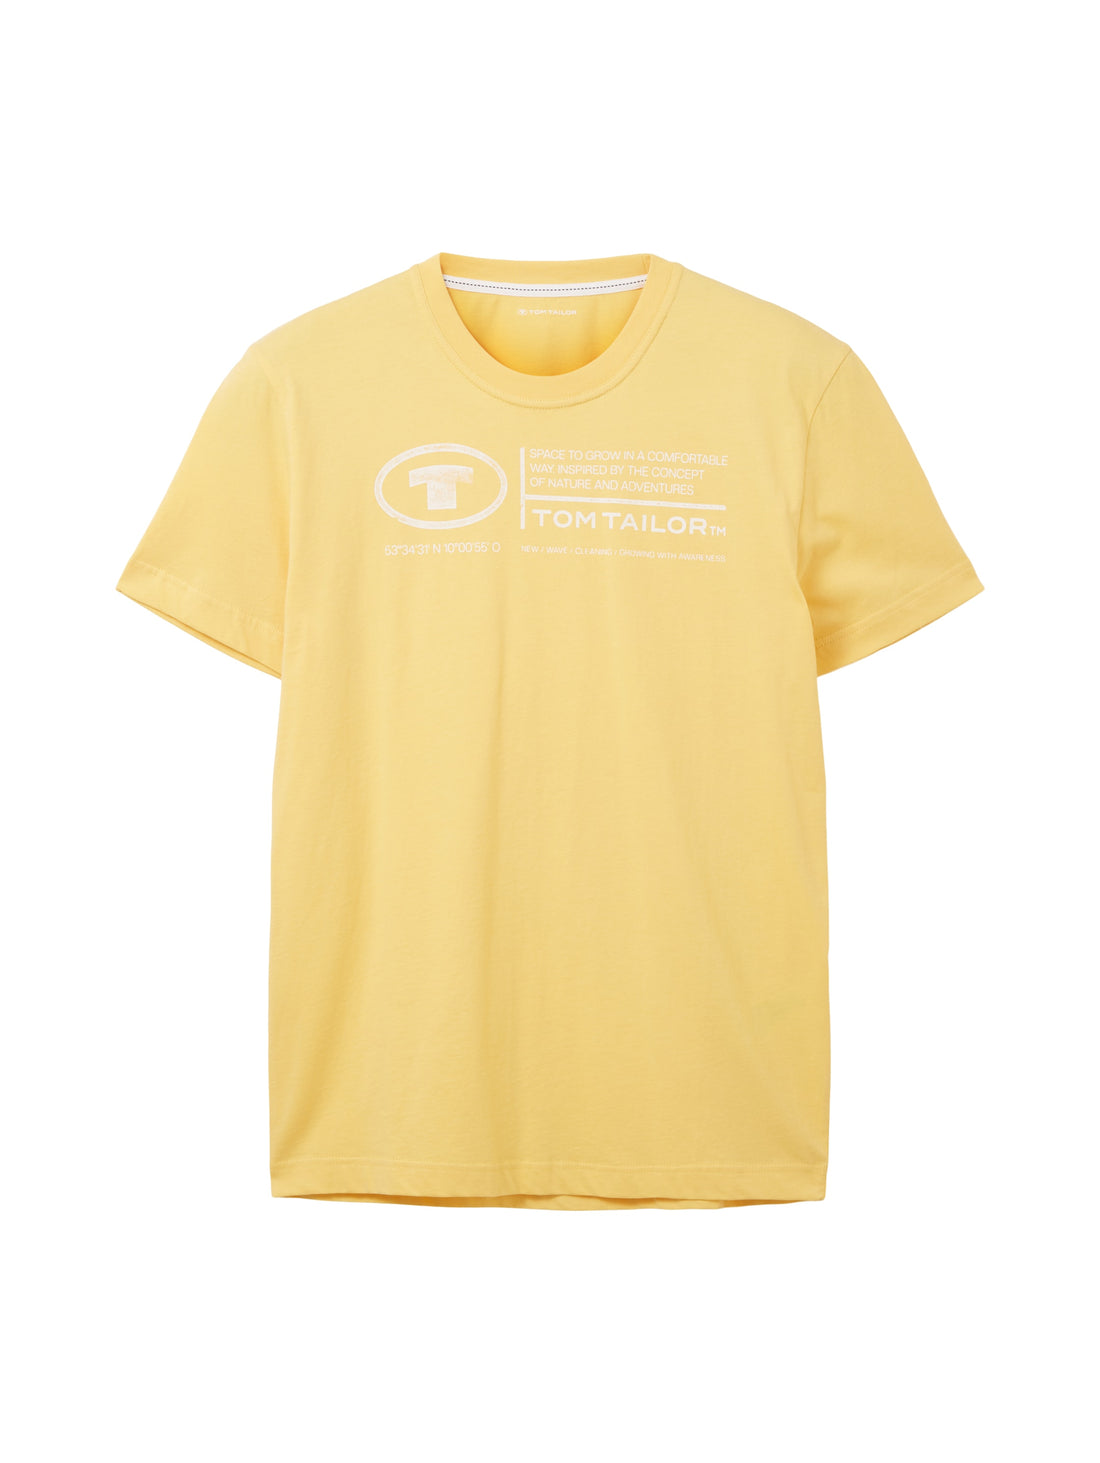 Yellow Short Sleeve Graphic T-Shirt